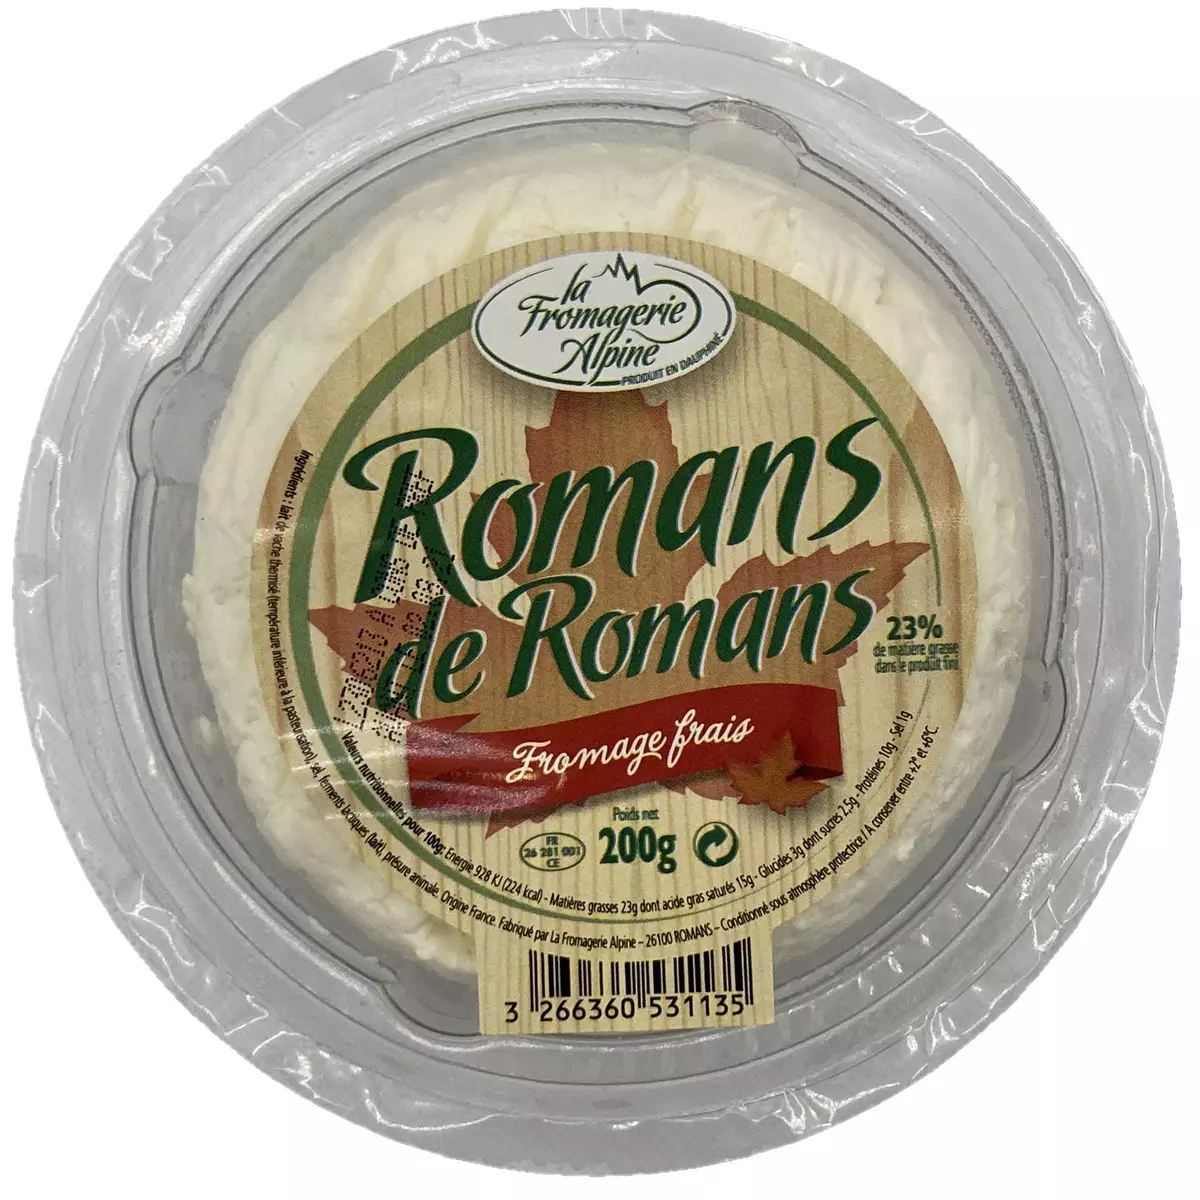 LA FROMAGERIE ALPINE Romans de Romans fromage frais 200g